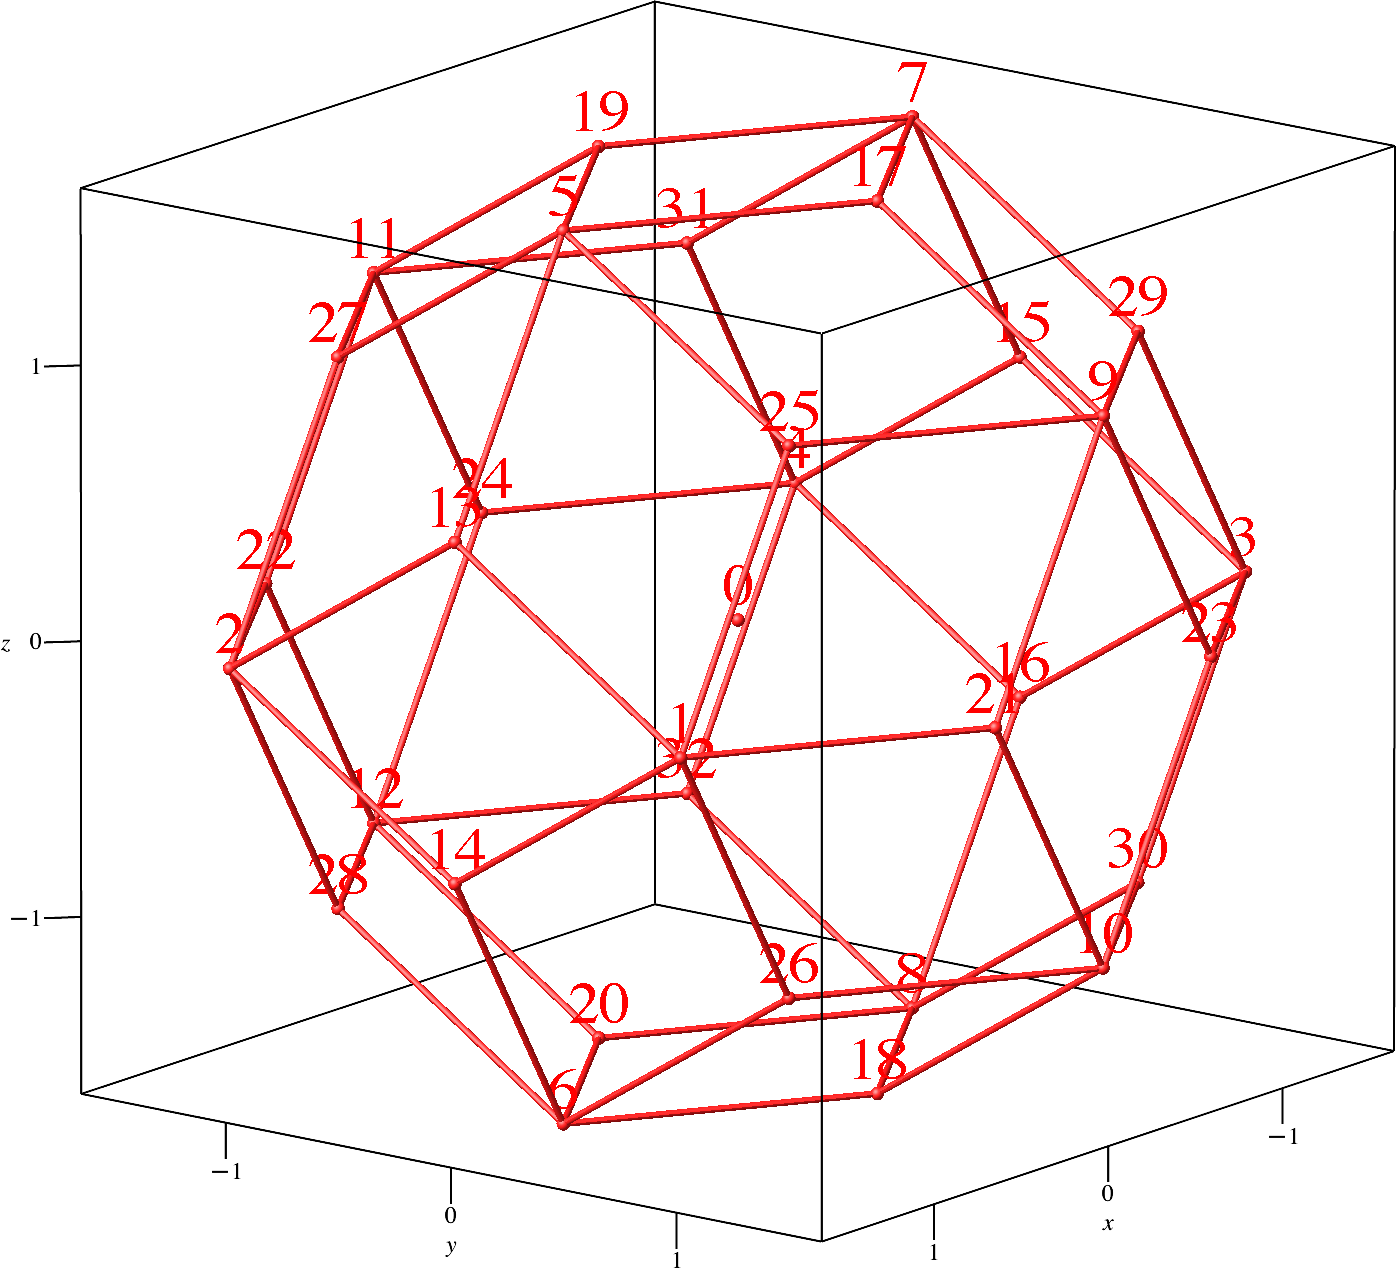 Ein Bild, das Diagramm, Origami, Symmetrie, Design enthält.

Automatisch generierte Beschreibung